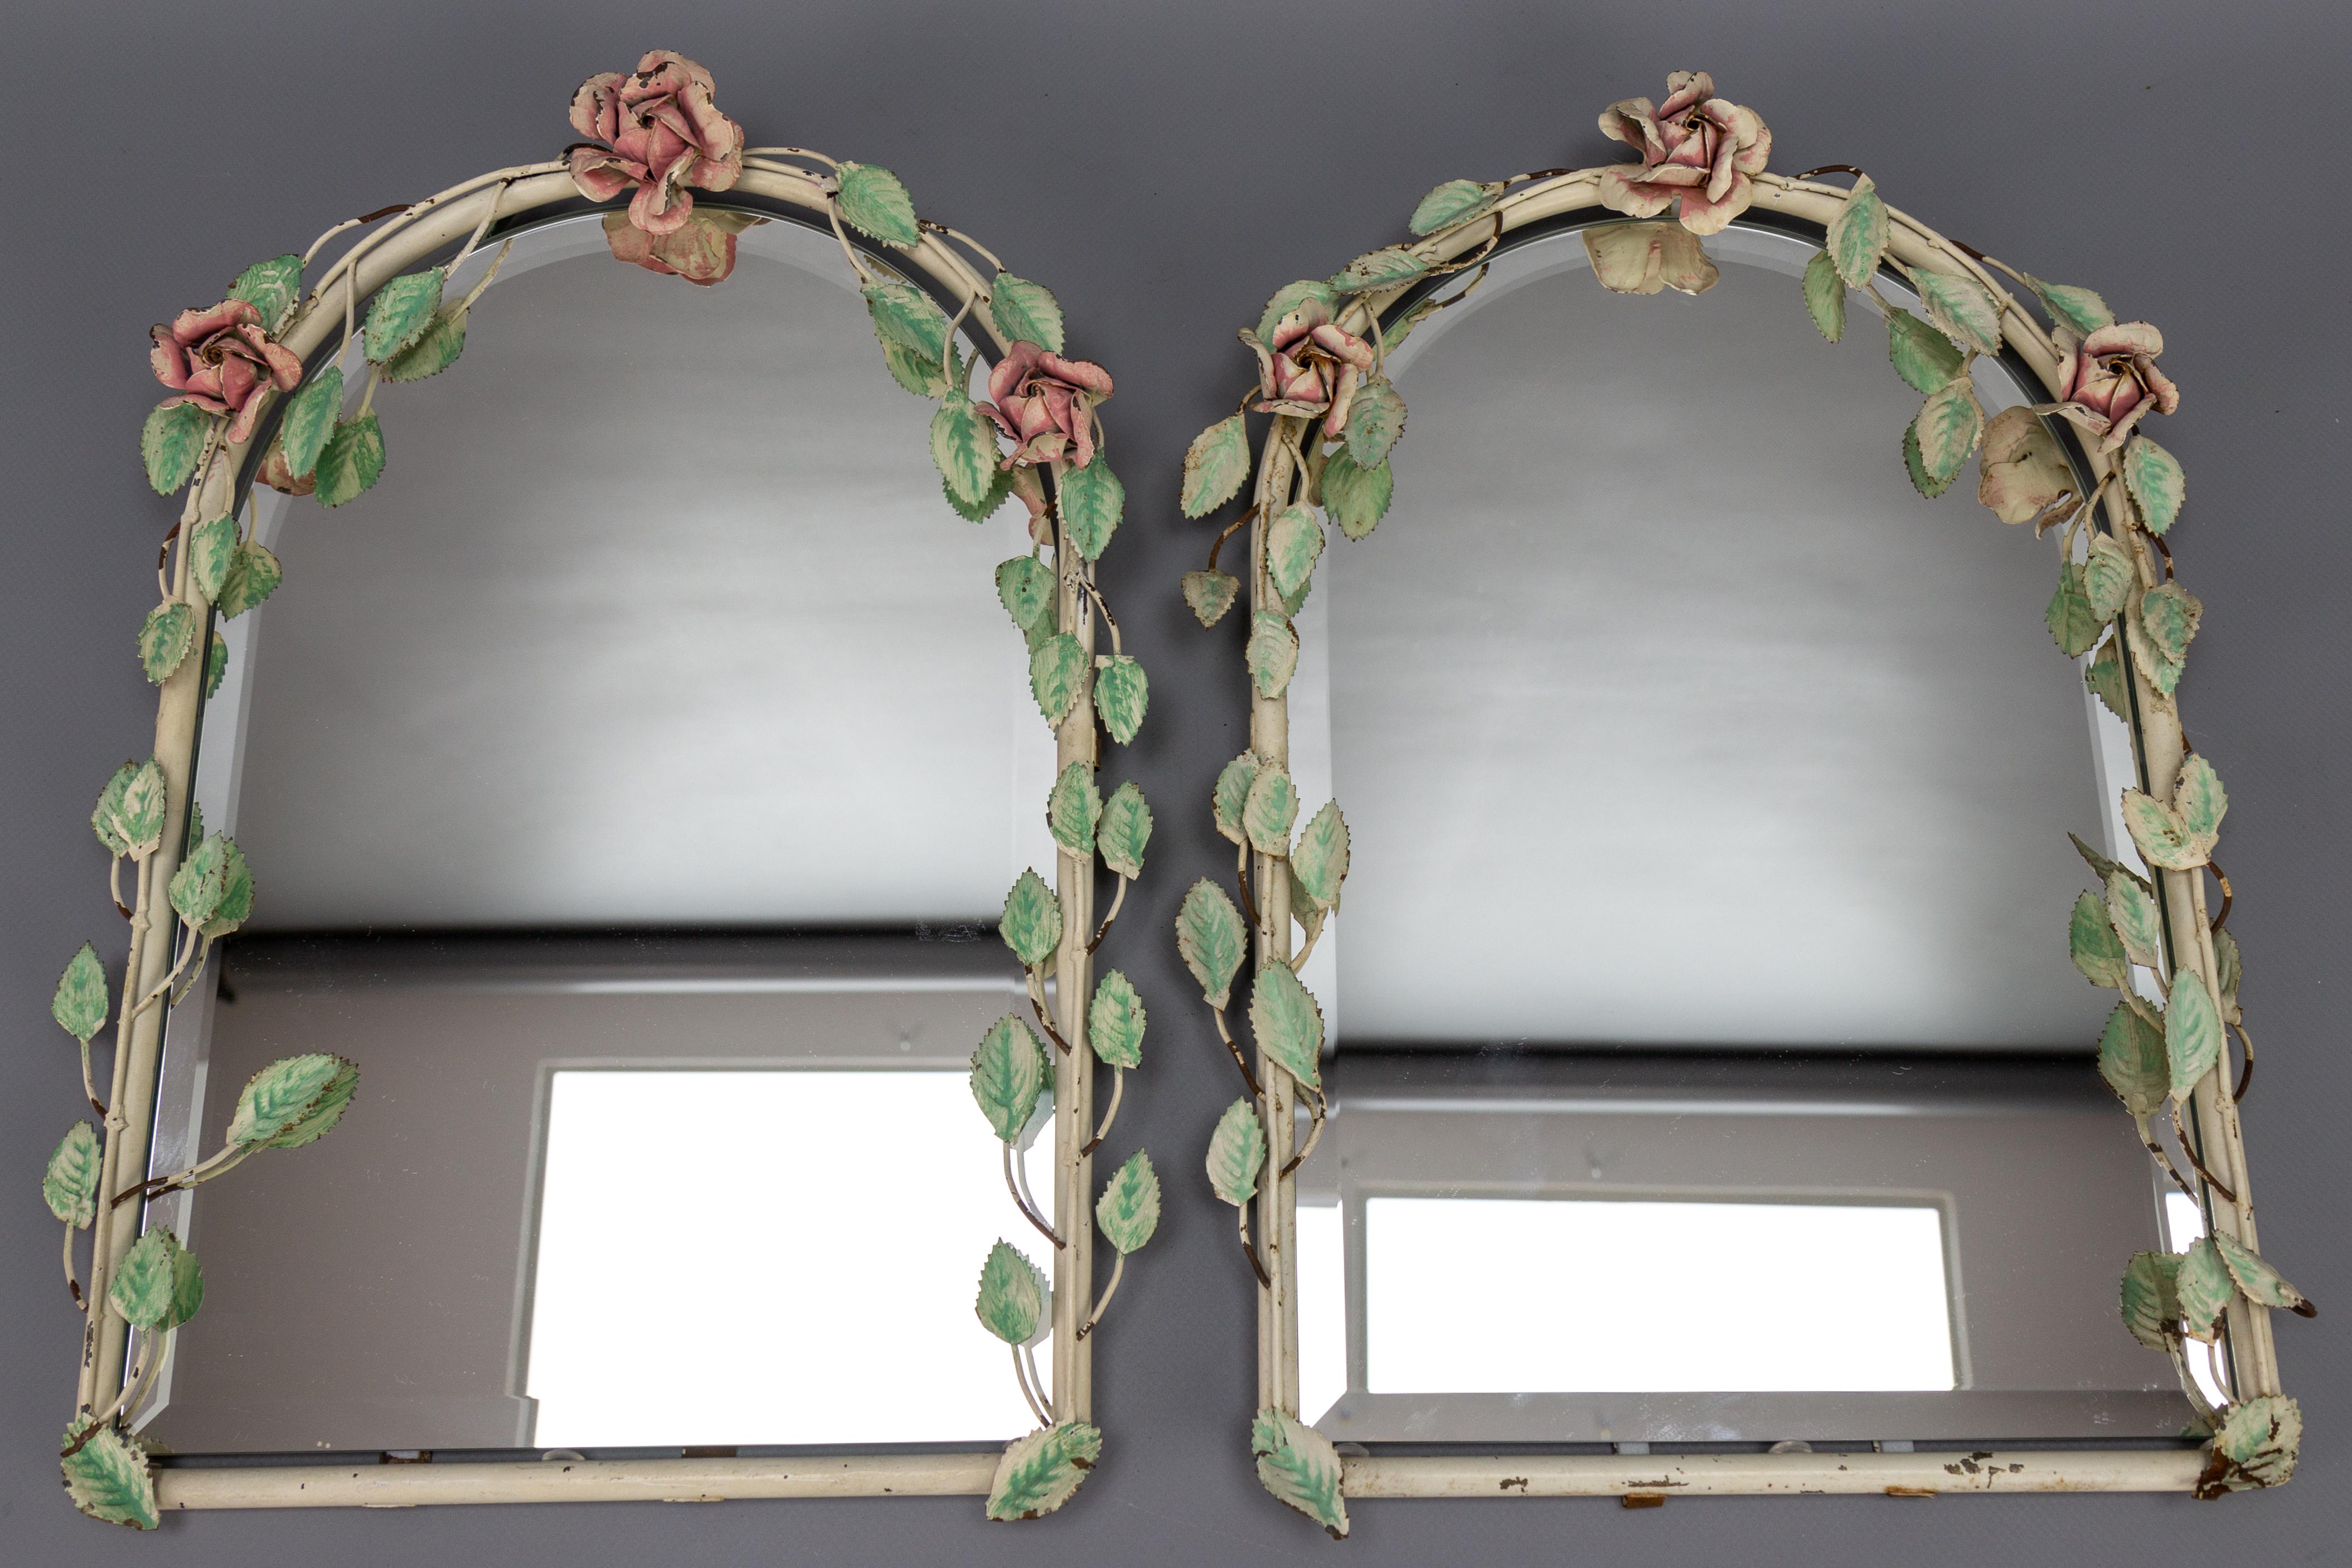 Zwei italienische, bemalte Wandspiegel aus Zinnblumen, 1950er Jahre.
Dieses schöne Paar italienischer Wandspiegel hat einen pastellfarbenen Rahmen mit Rosen und Rosenblättern und abgeschrägten Spiegeln.
In gutem Zustand mit einigen Abplatzungen an